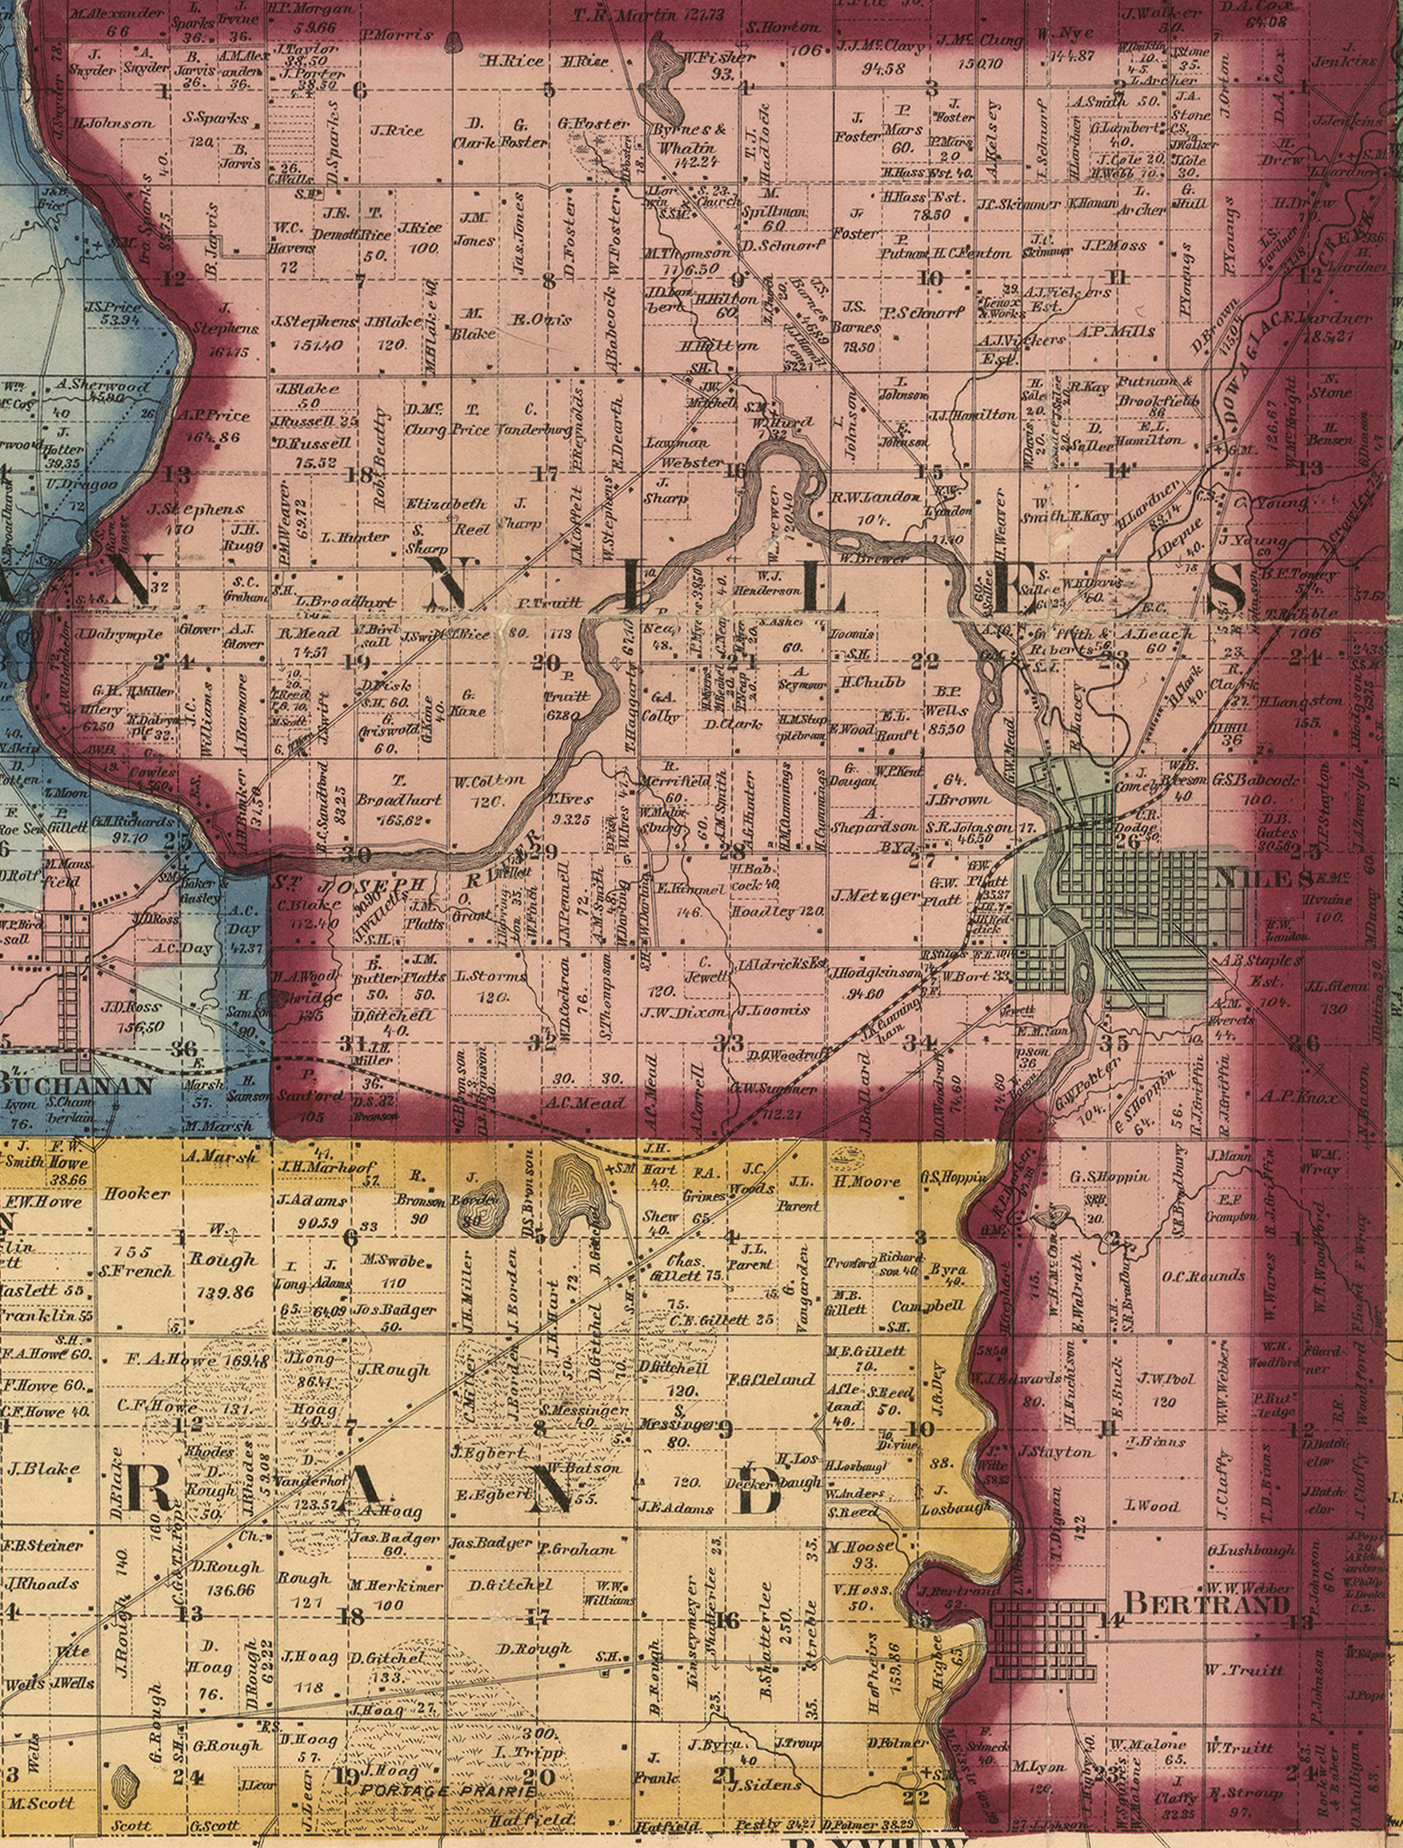 1860 Niles Township, Michigan landownership map